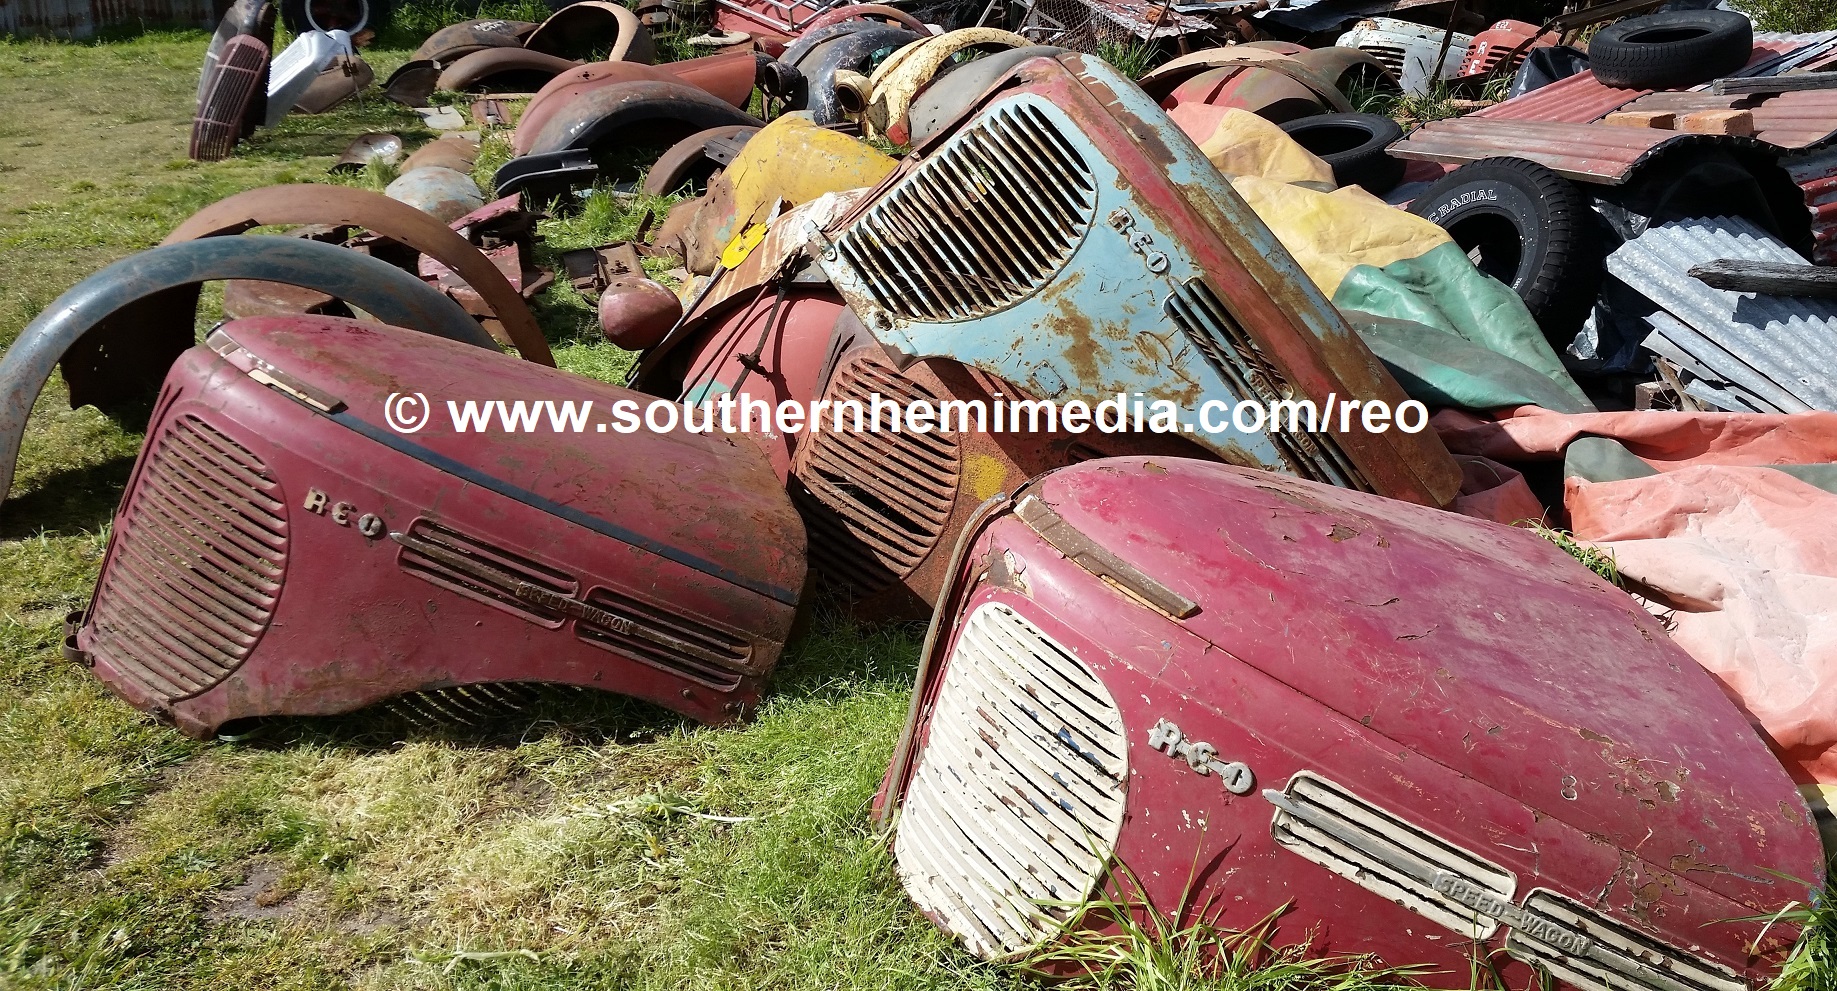 REO_truck_bus_car_parts_1949-1950s_Gold_Comet_Crown_Fenders_mudguards_Hood_Bonnet_etc_(18)